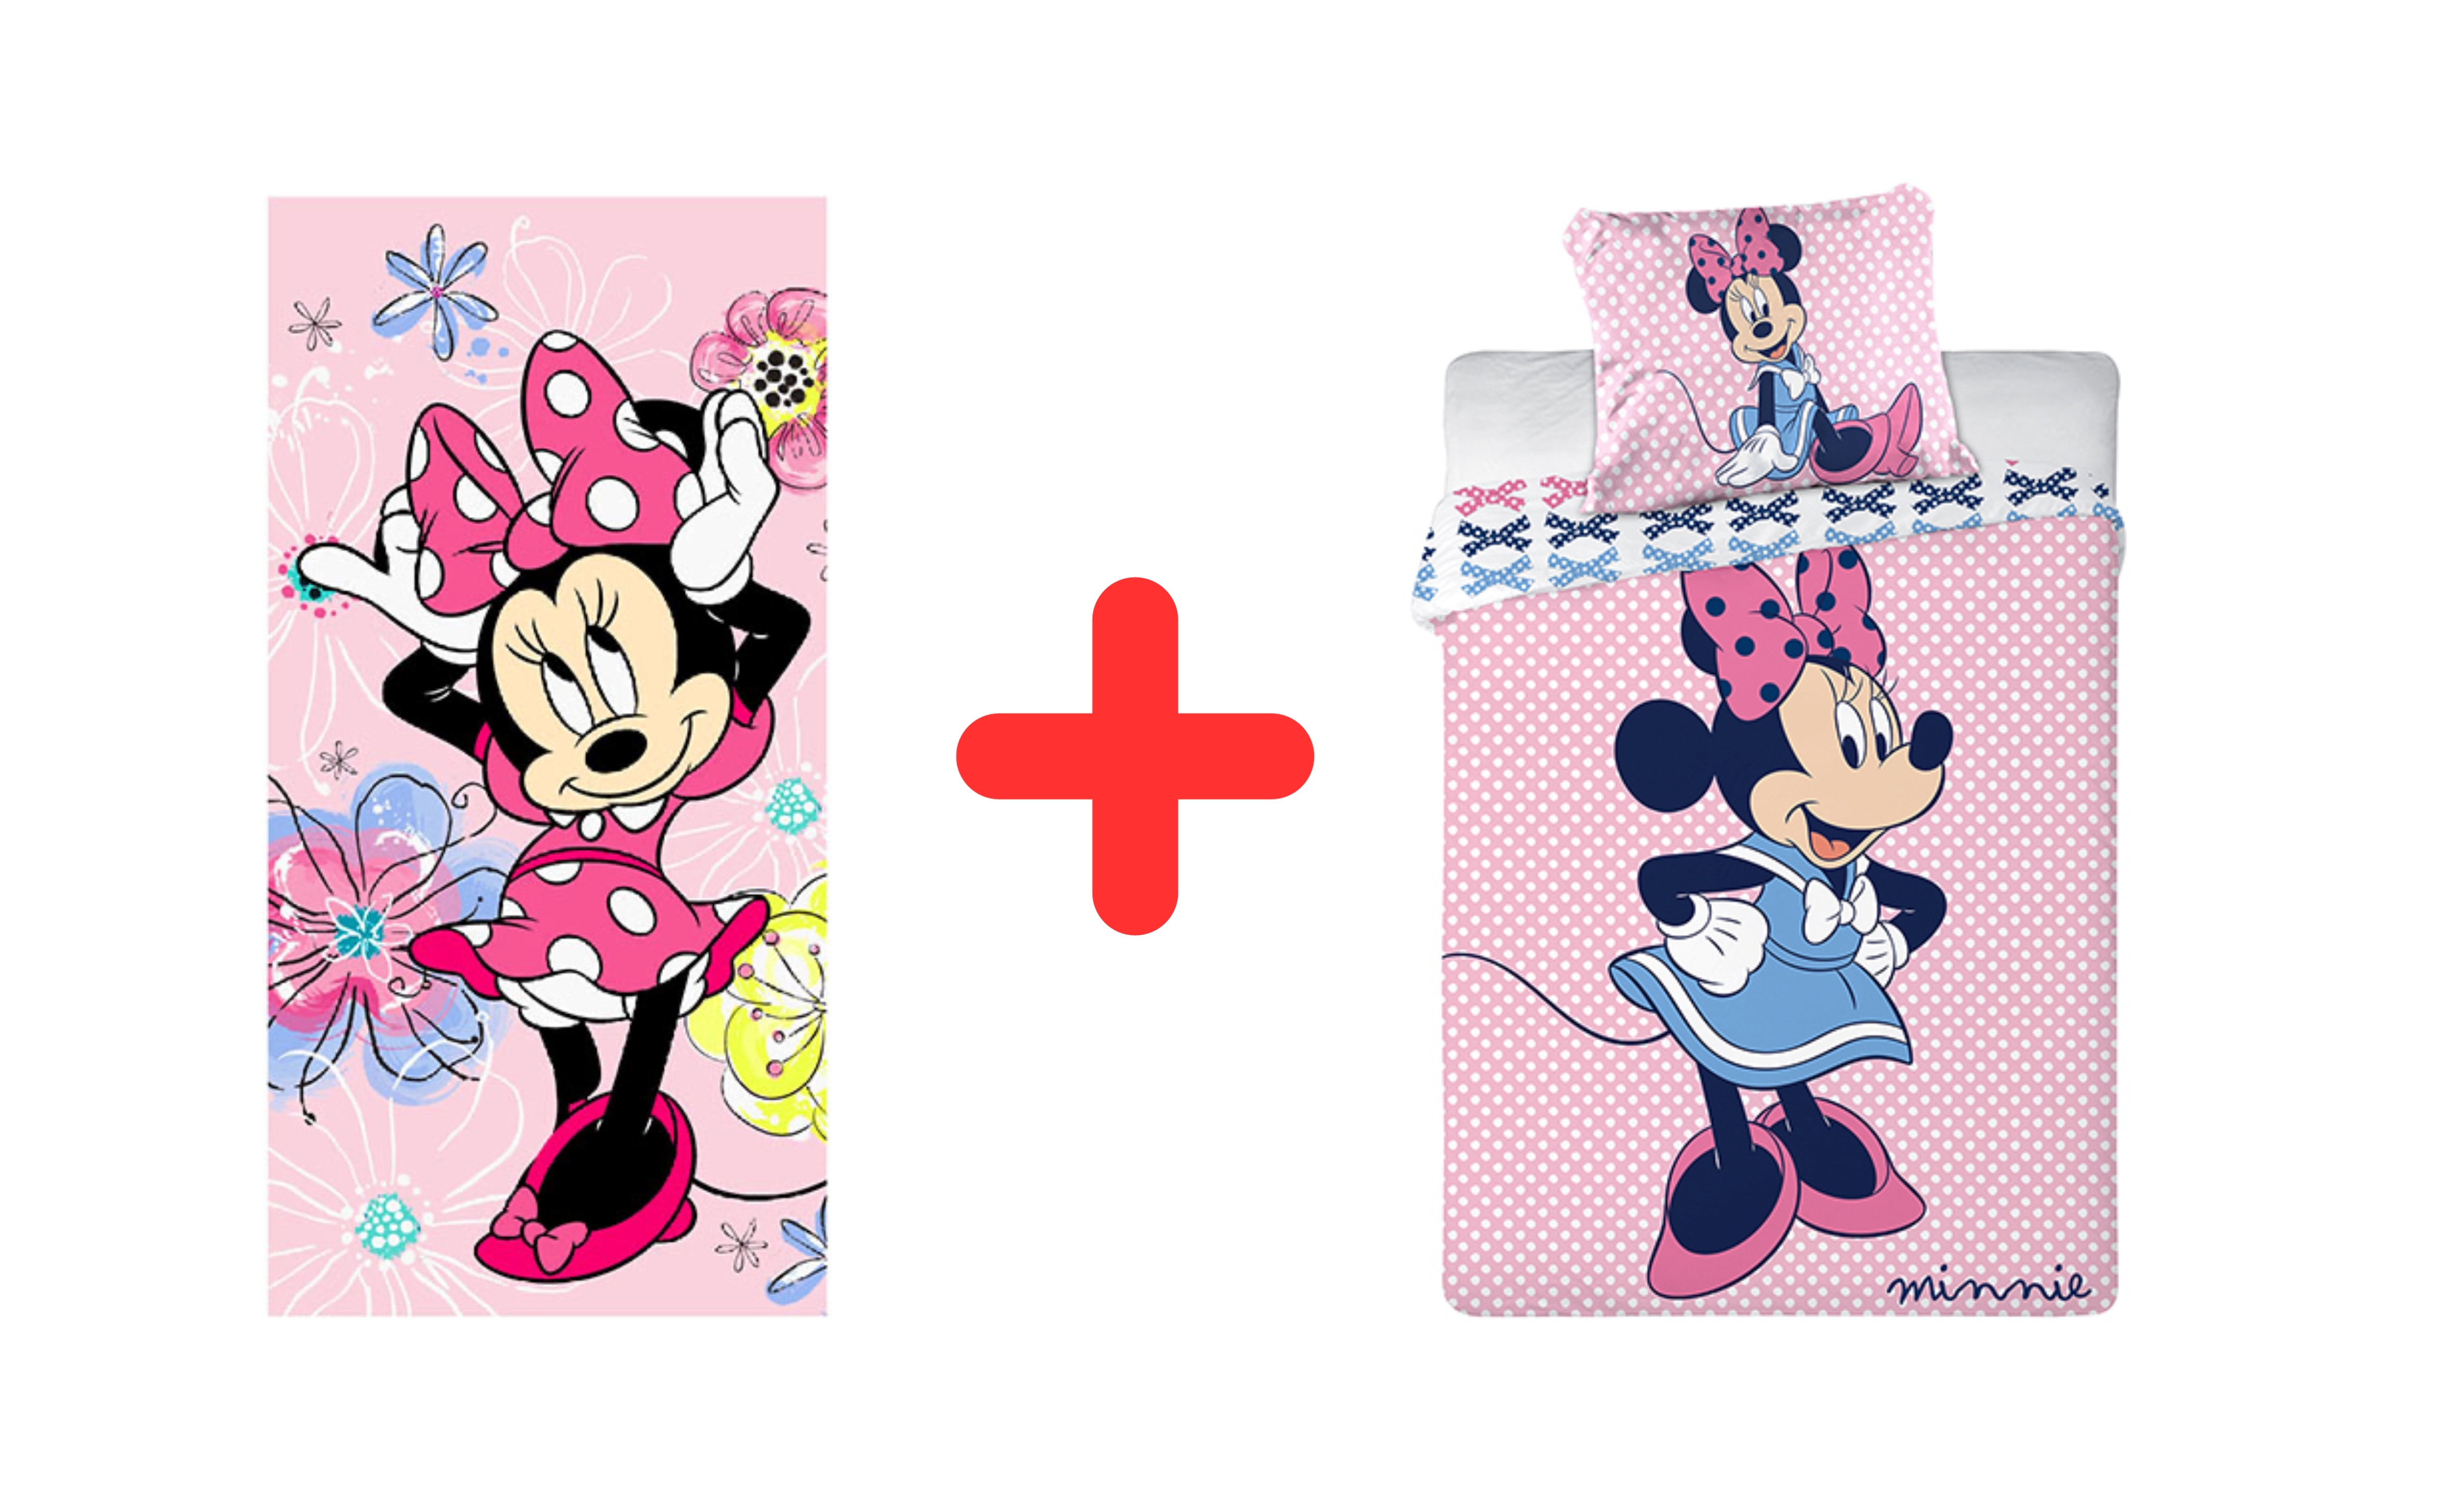 Disney Minnie Mouse Kinder Heitmtextilien 2er Geschenk Set: Handtuch + Bettwäsche 100x135 + Kopfkissen 40x60 cm, 100% Baumwolle